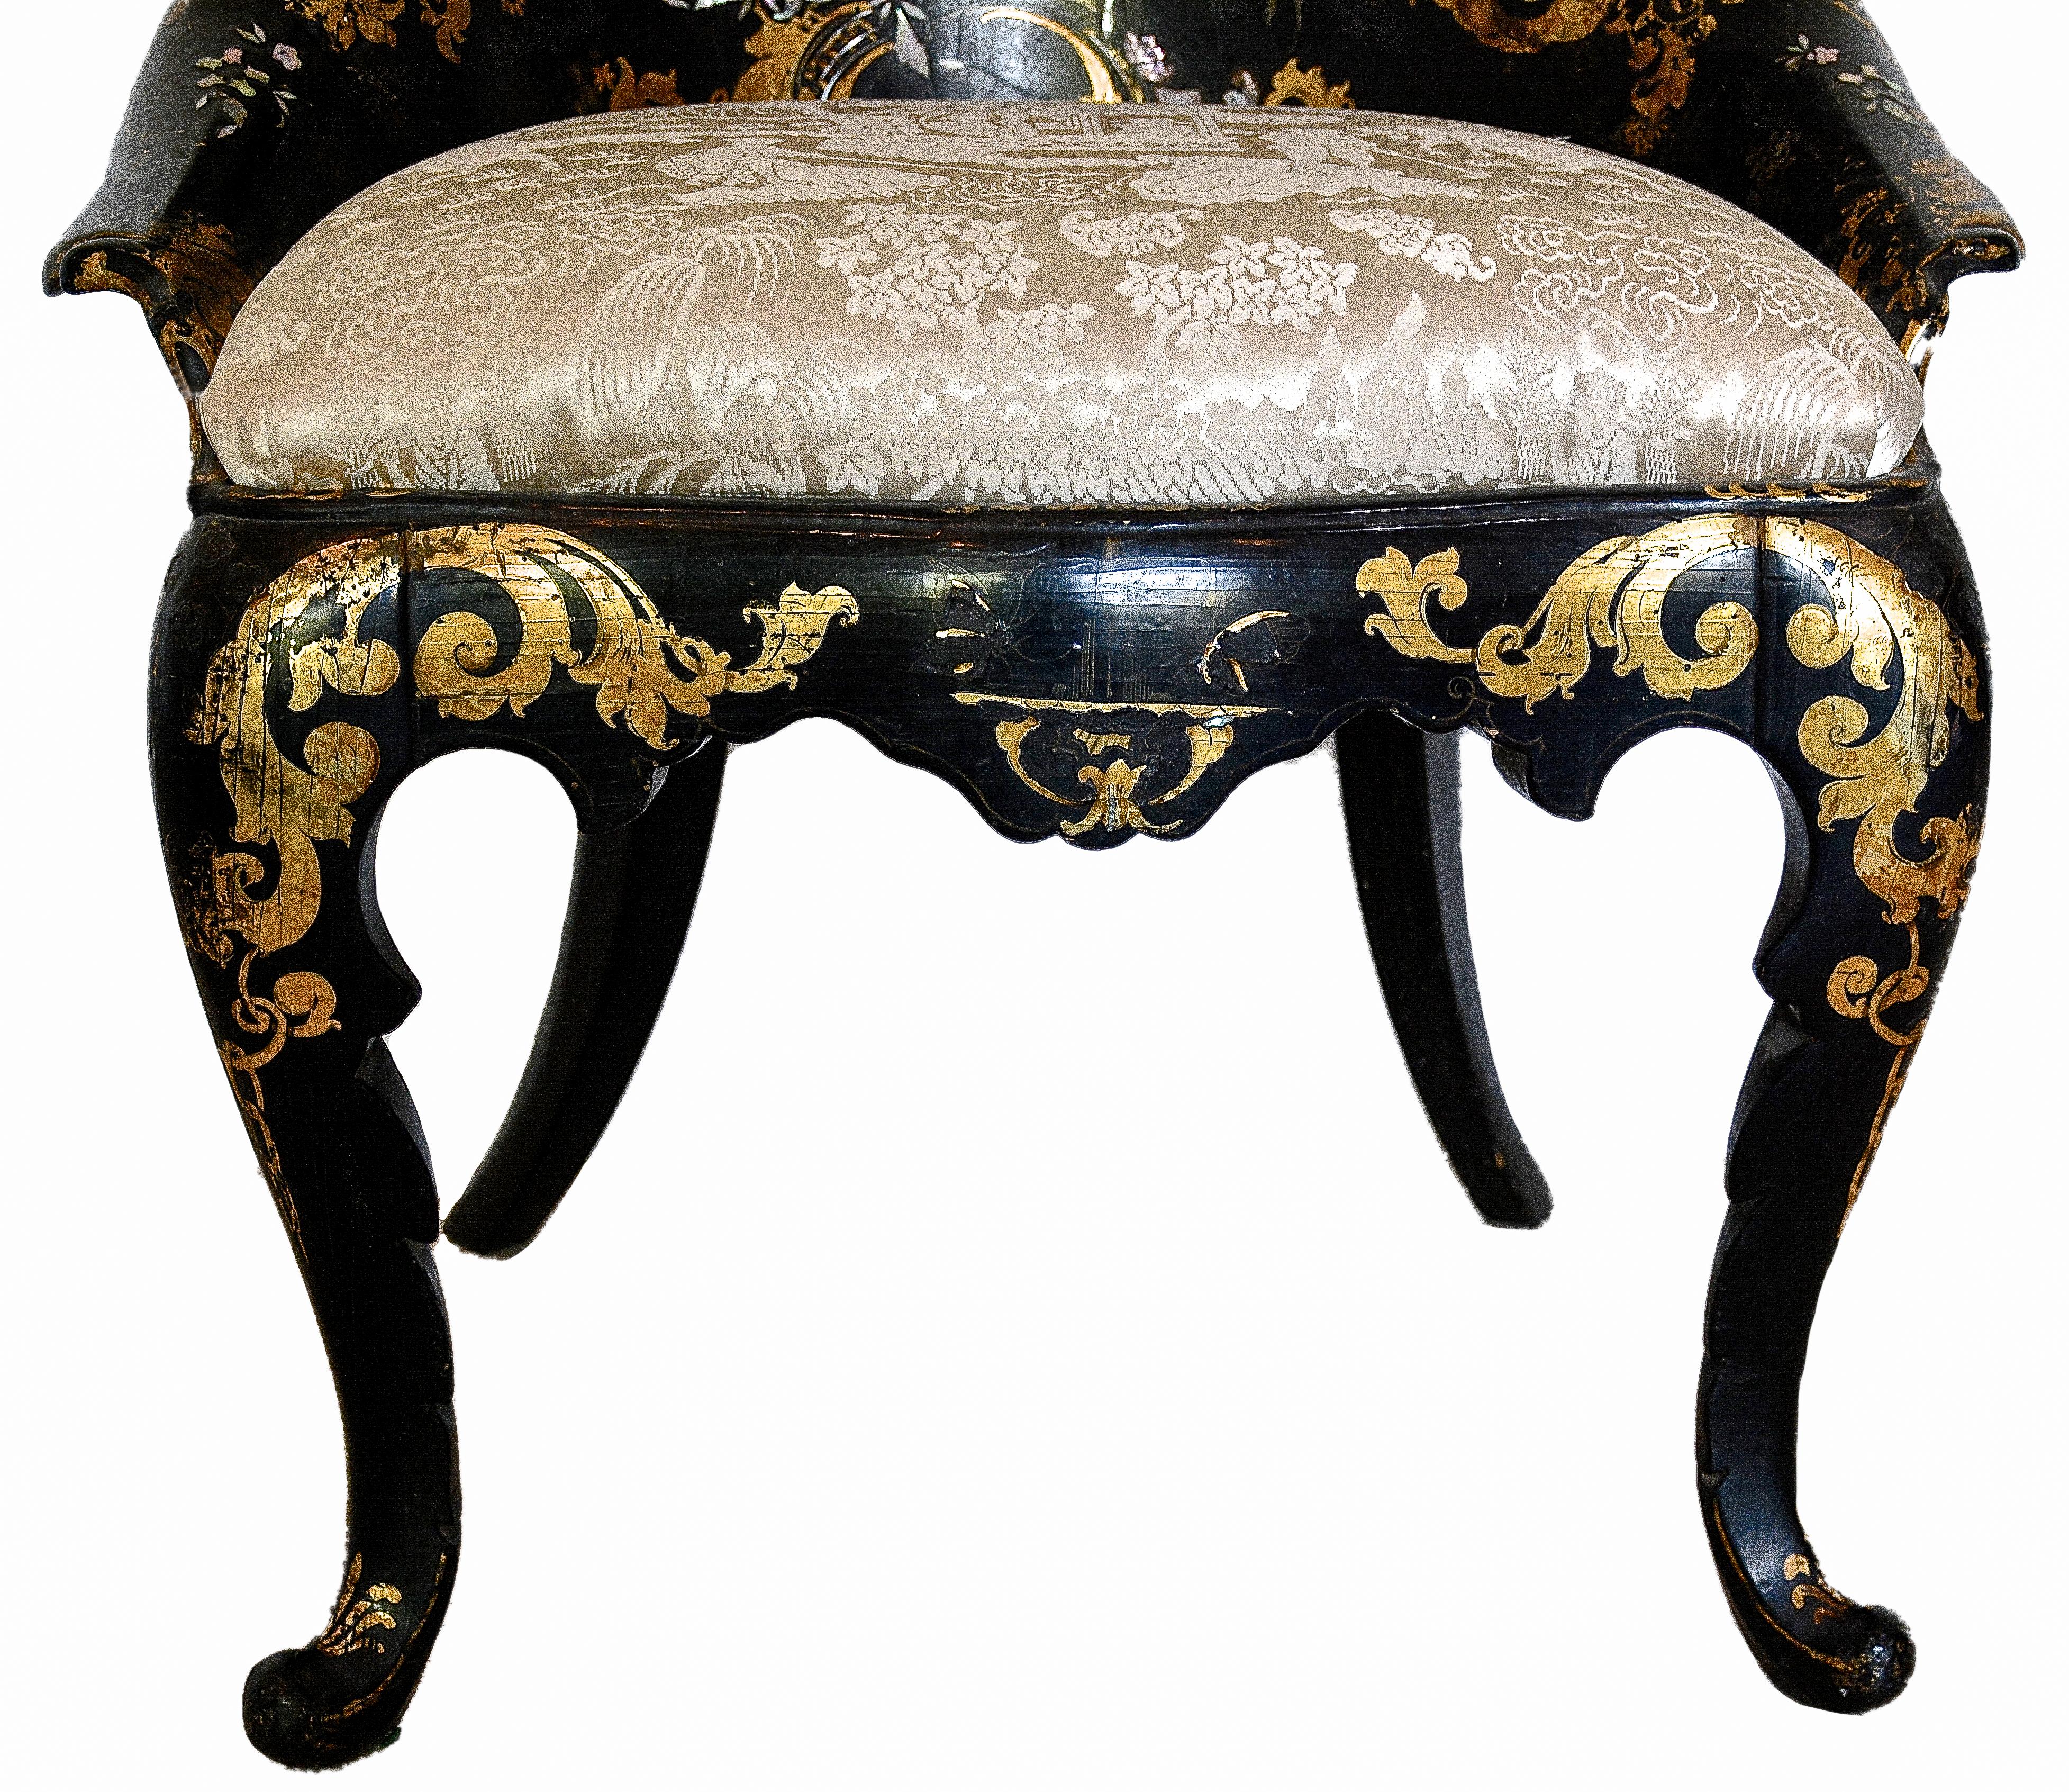 Viktorianischer Stuhl aus dem 19. Jahrhundert mit Intarsien aus Perlmutt und vergoldetem Pappmaché.

Dieser elegant geformte Stuhl ist mit Perlmutt-Intarsienmustern von Blumen und fliegenden Vögeln verziert, die durch vergoldete Ornamente